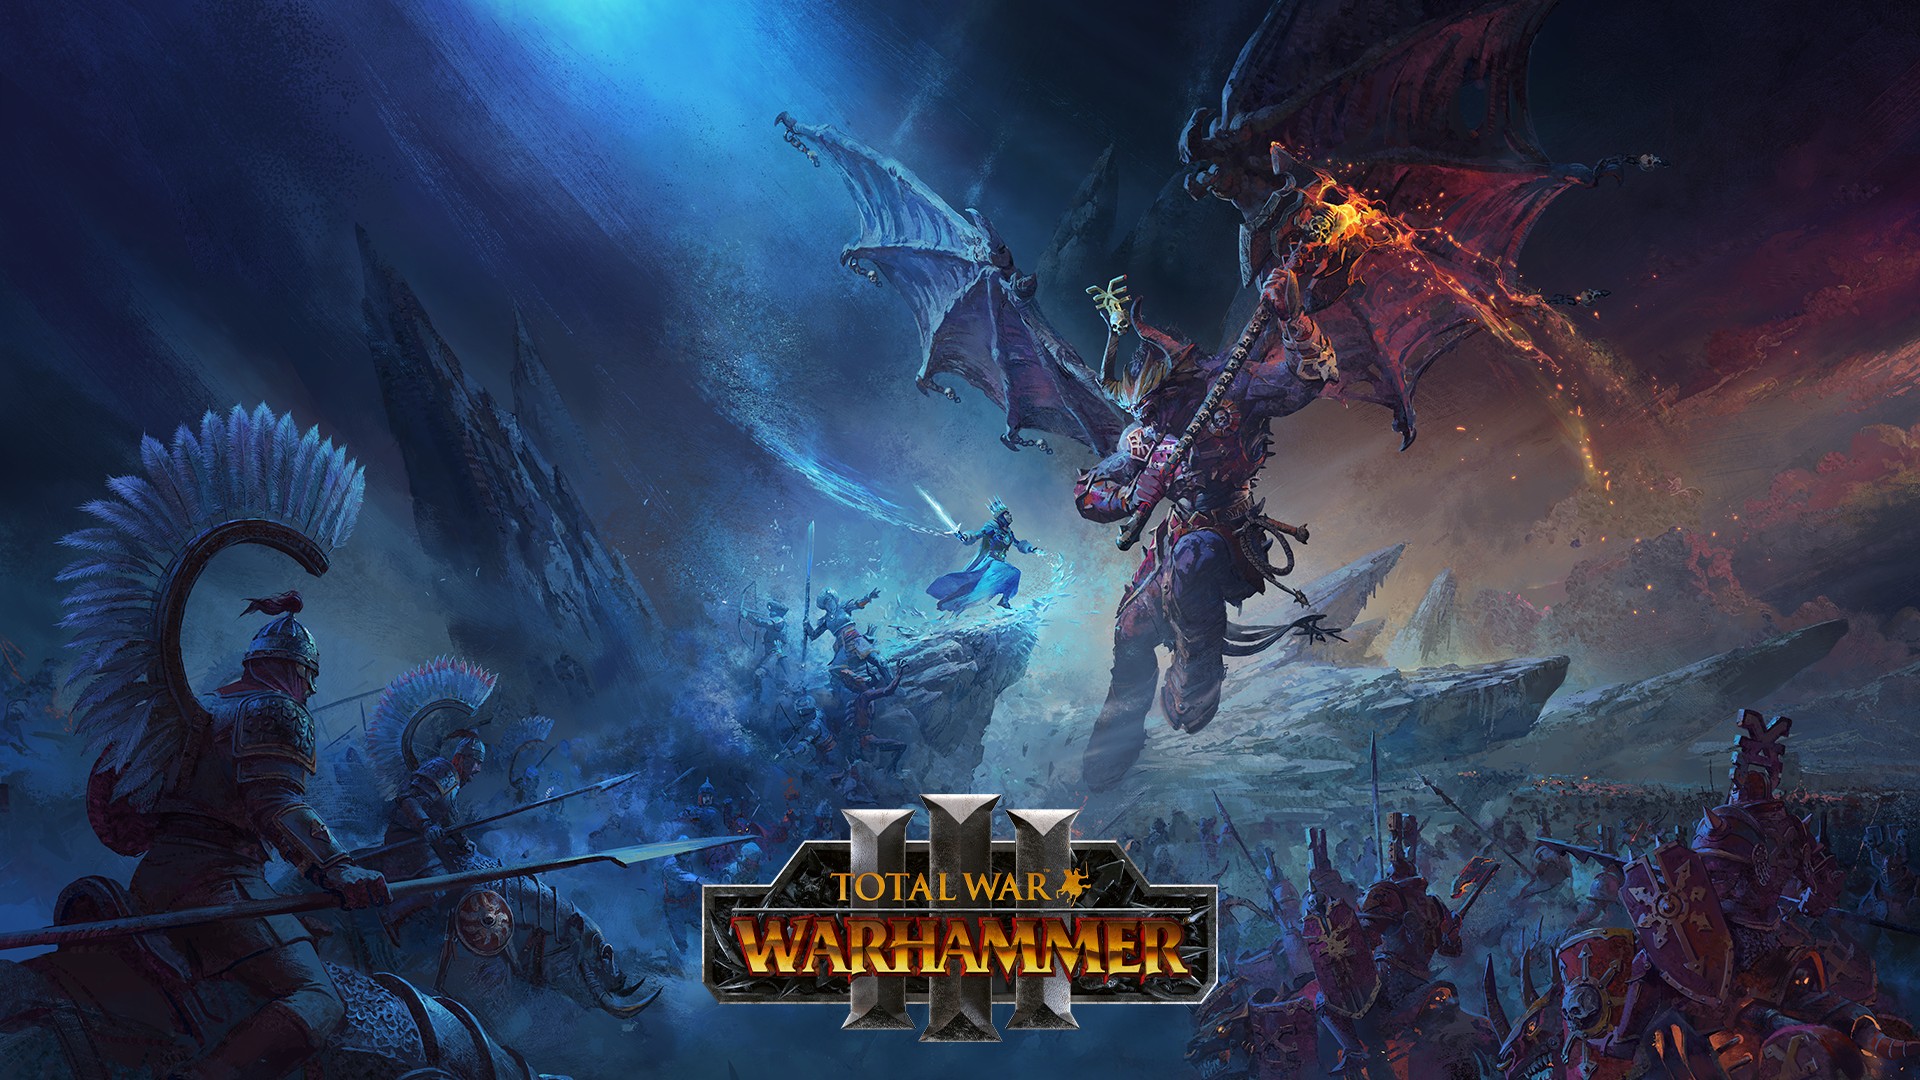 Total War: Warhammer III sắp được phát hành trên Game Pass cho PC, hứa hẹn đem đến những giờ phút giải trí tuyệt vời cho game thủ. Tận hưởng những trận chiến khốc liệt và ngắm nhìn thế giới ảo với đồ họa cực kì chân thực.